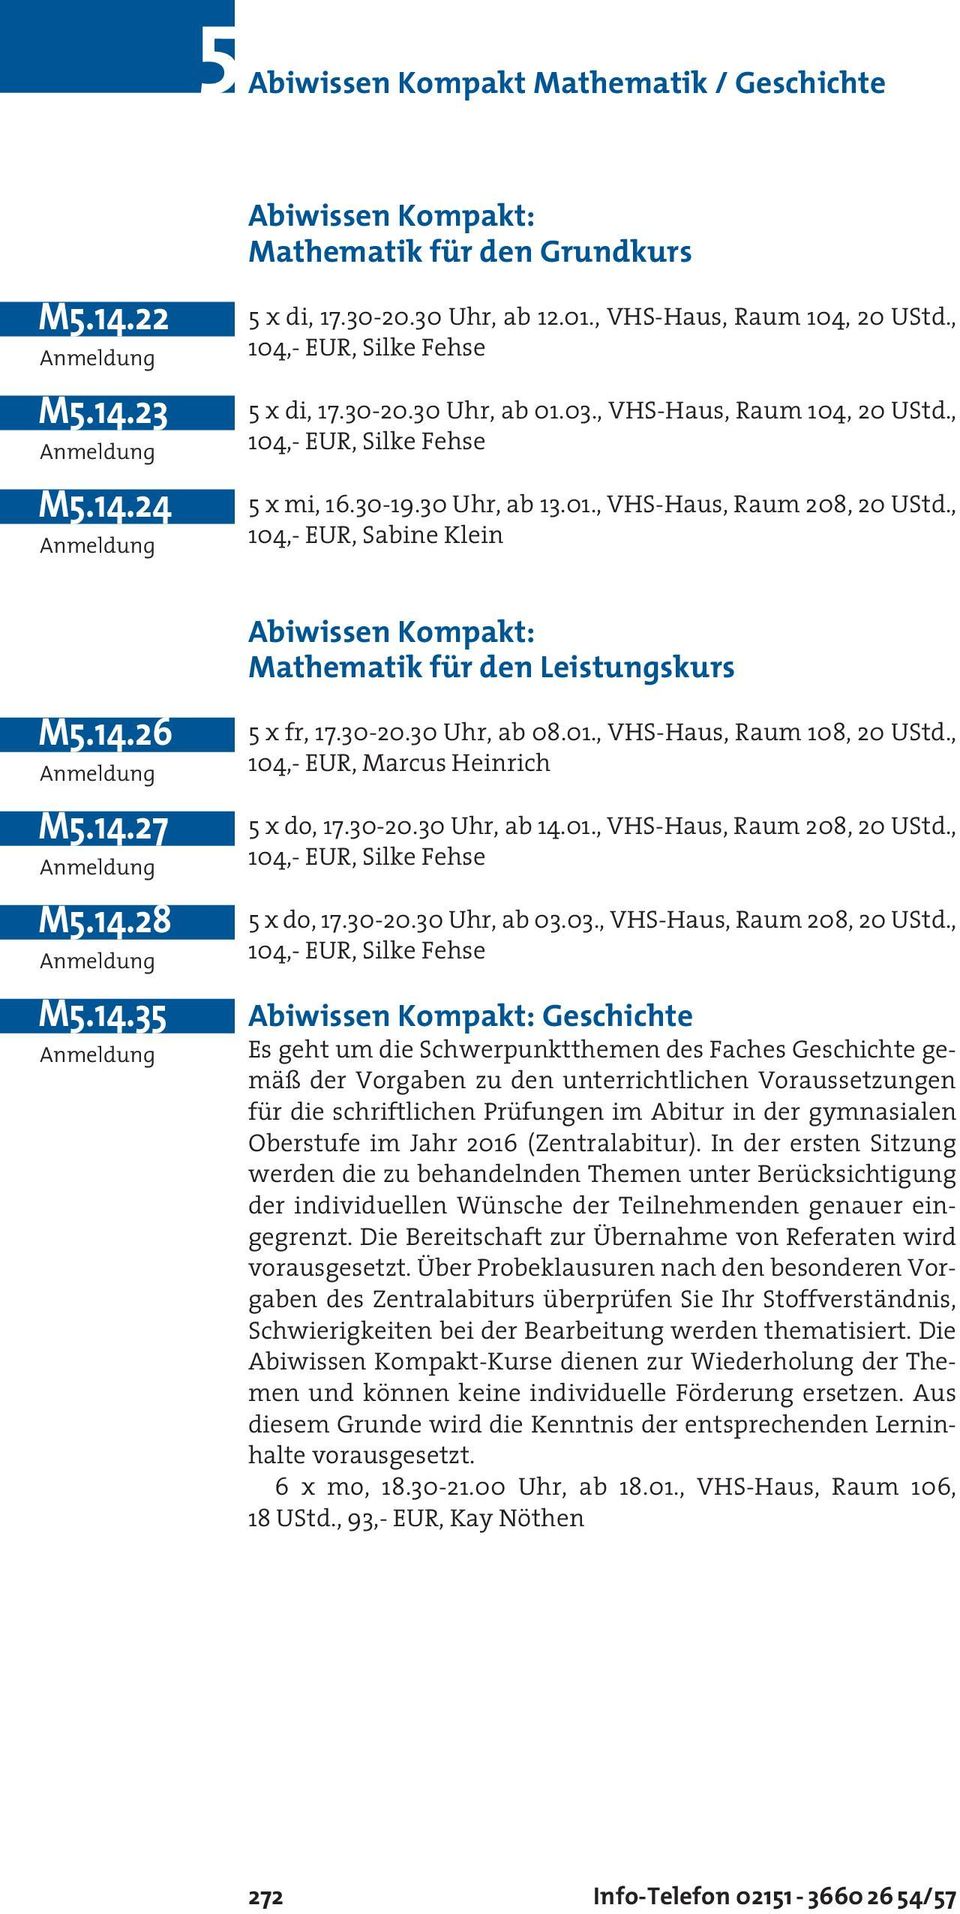 , 104,- EUR, Sabine Klein Abiwissen Kompakt: Mathematik für den Leistungskurs M5.14.26 M5.14.27 M5.14.28 M5.14.35 5 x fr, 17.30-20.30 Uhr, ab 08.01., VHS-Haus, Raum 108, 20 UStd.